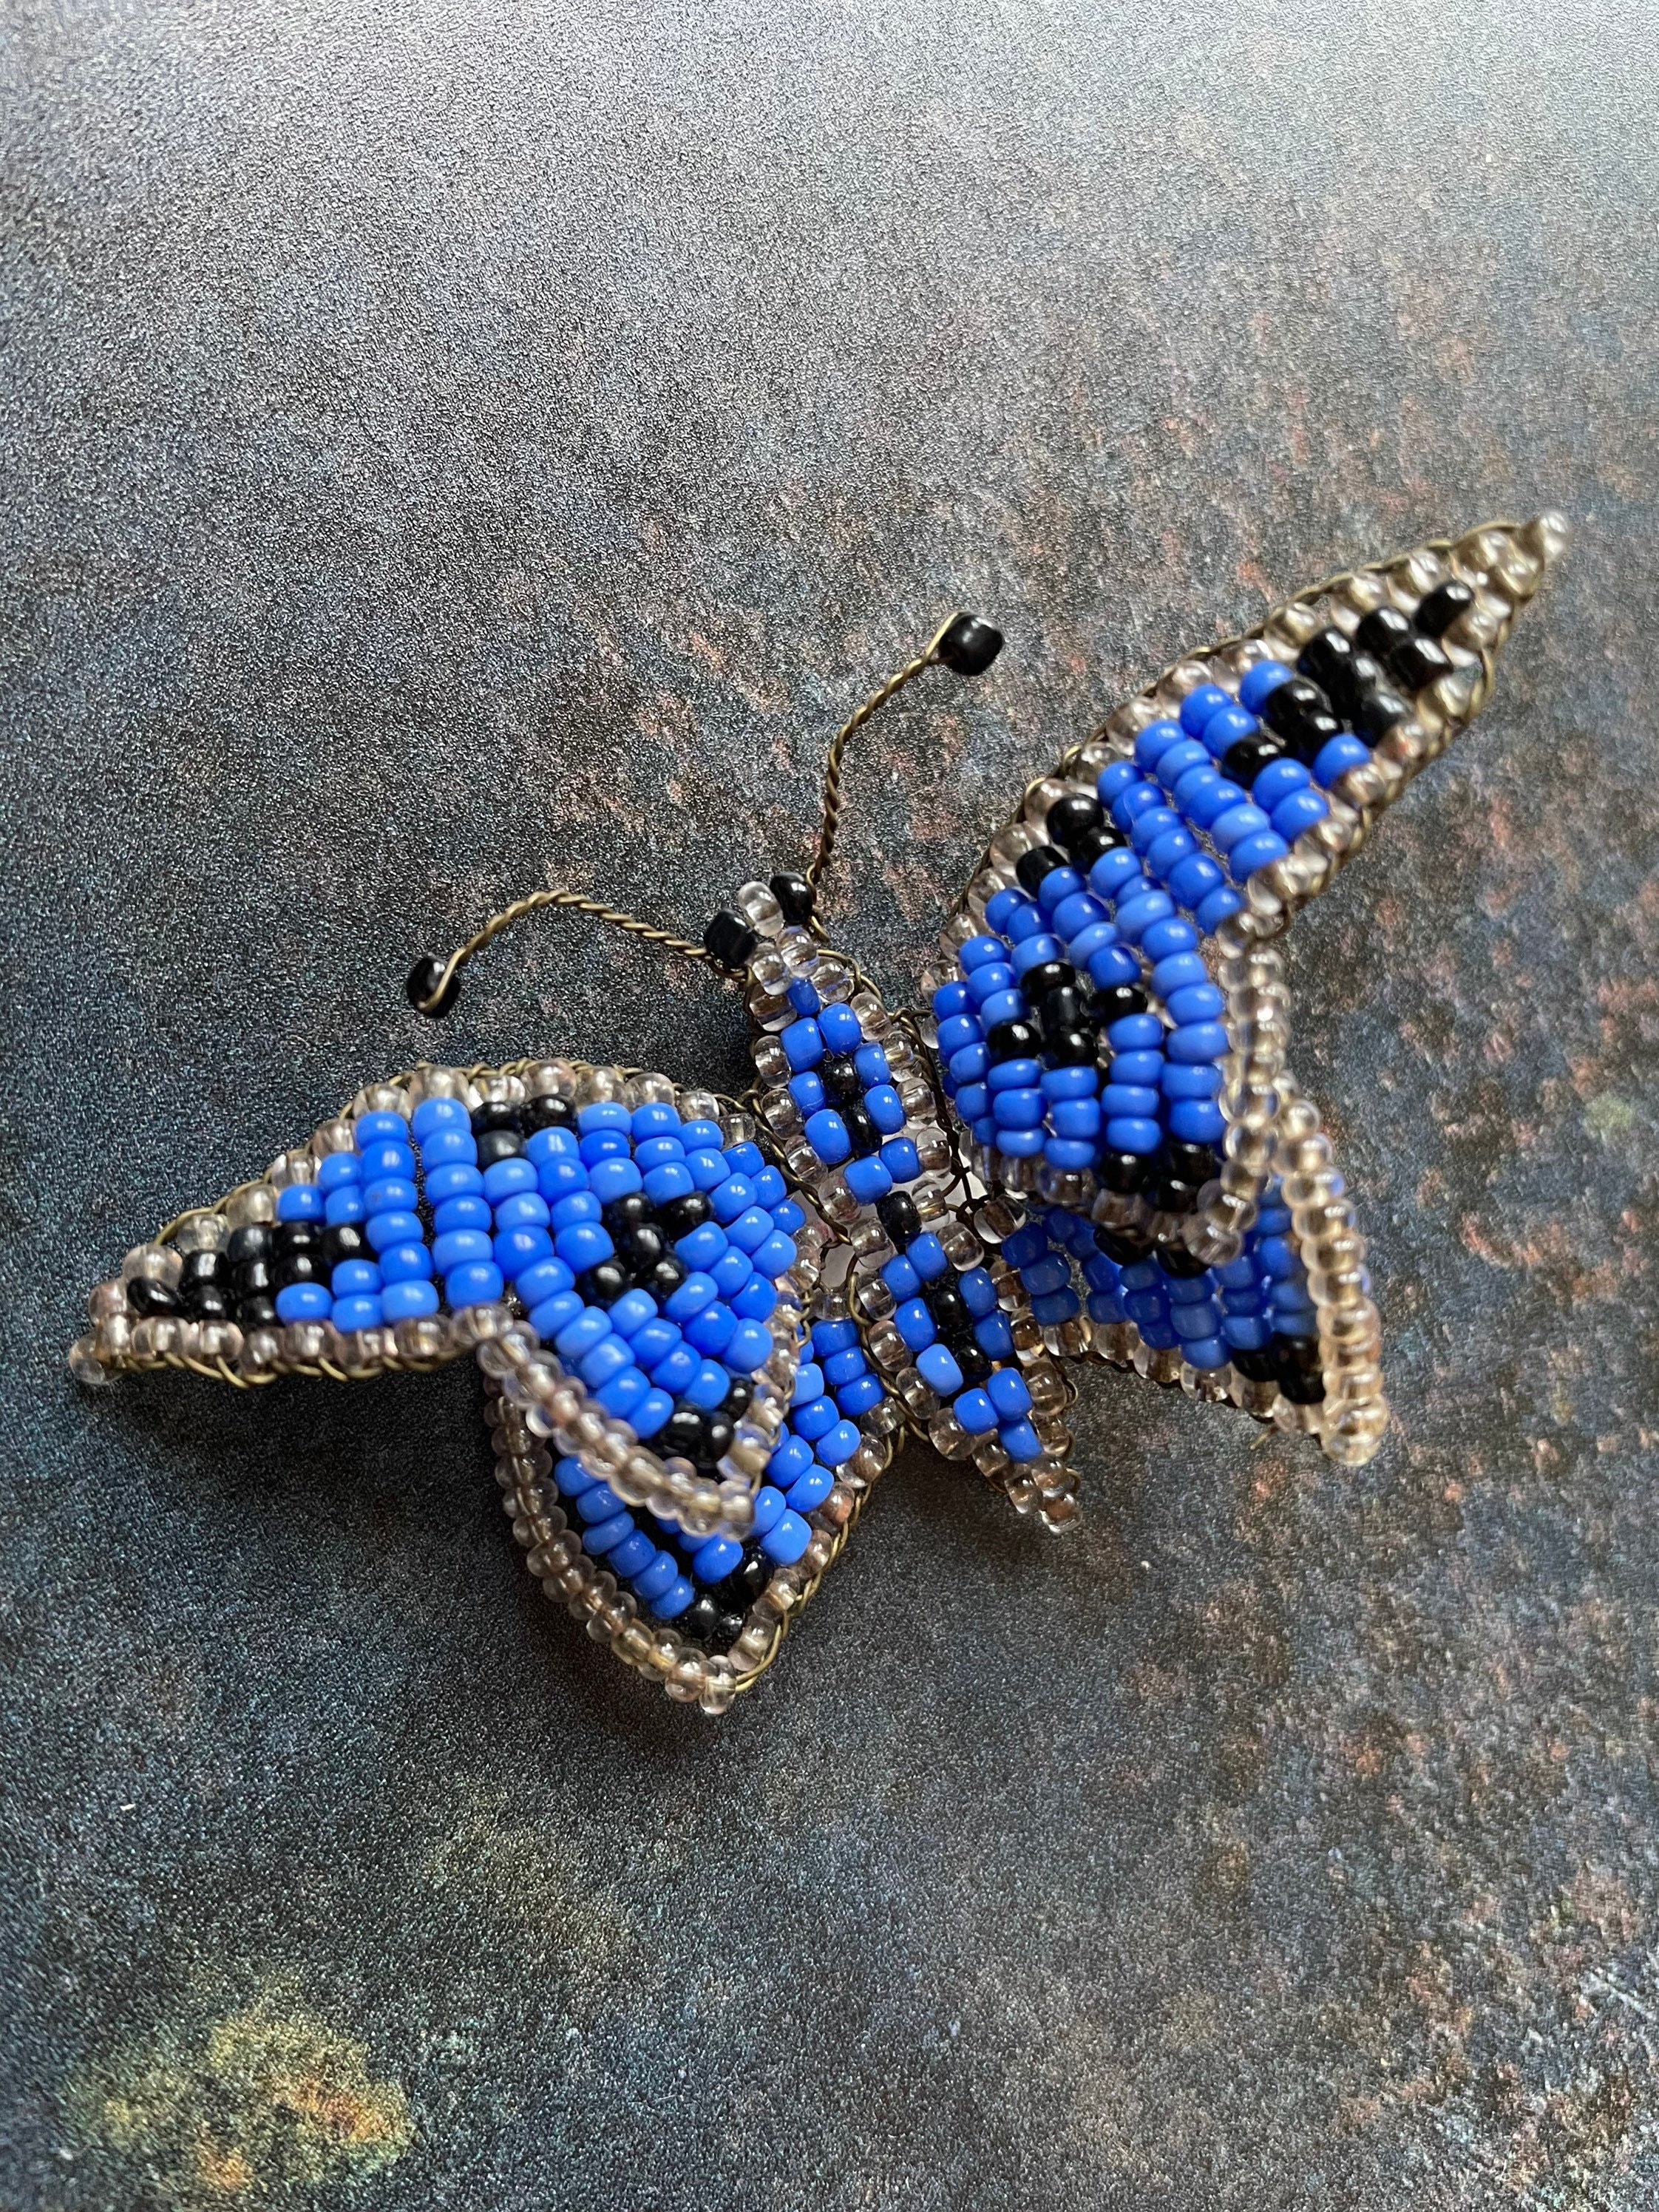 蝶の標本  壁掛け 額装品 昆虫標本 レトロ - 1